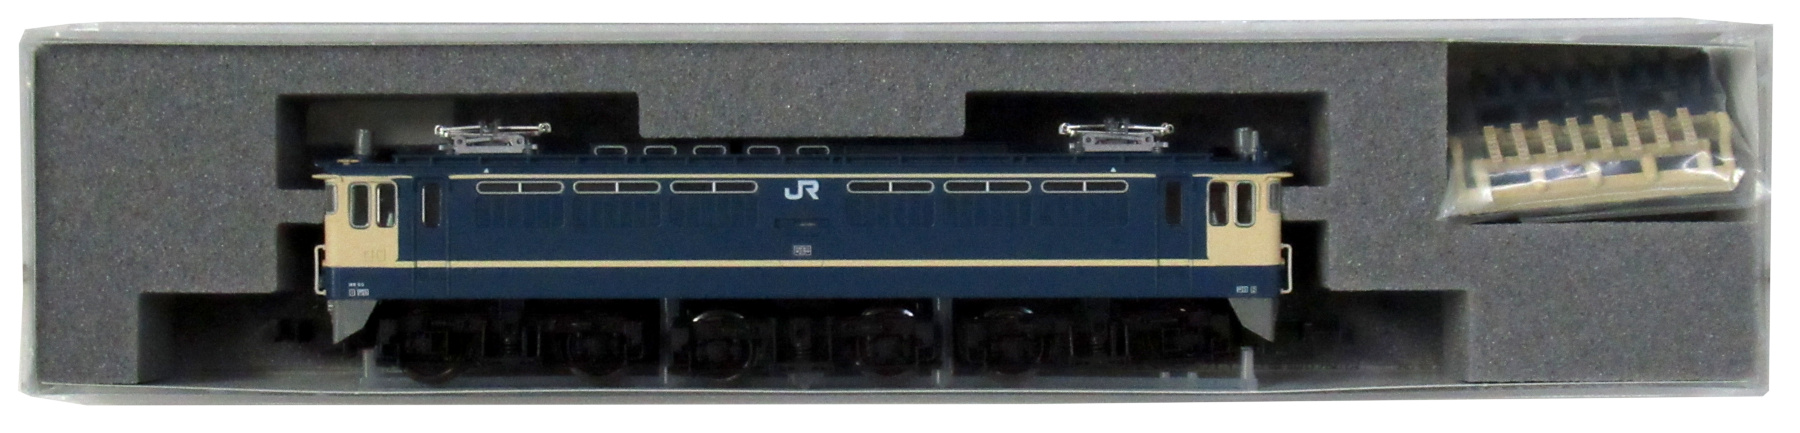 3061-2 EF65-1000 後期形(JR仕様)